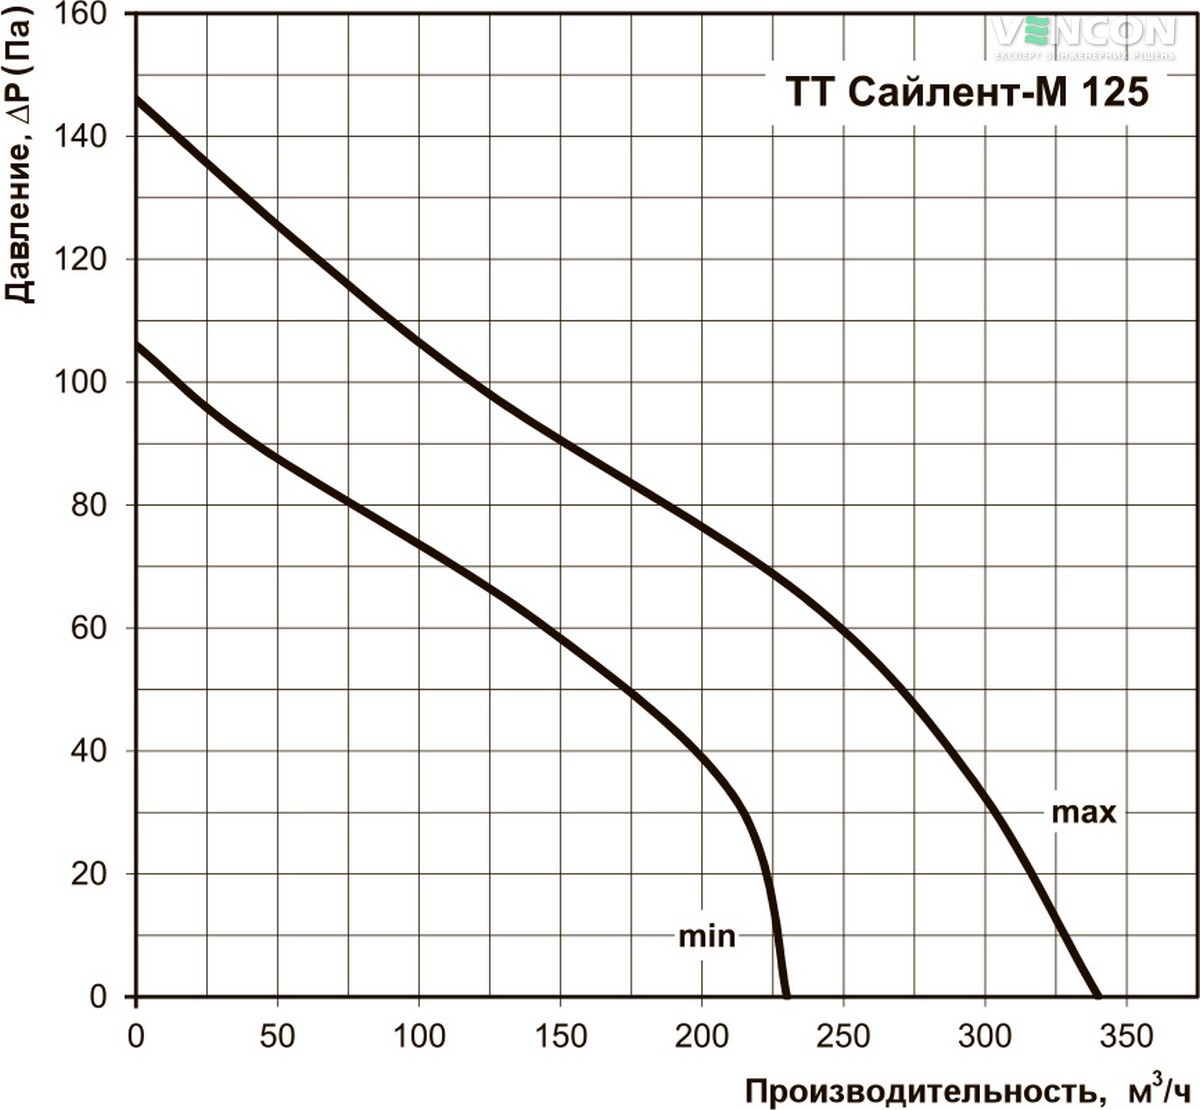 Вентс ТТ Сайлент-М 125 Диаграмма производительности